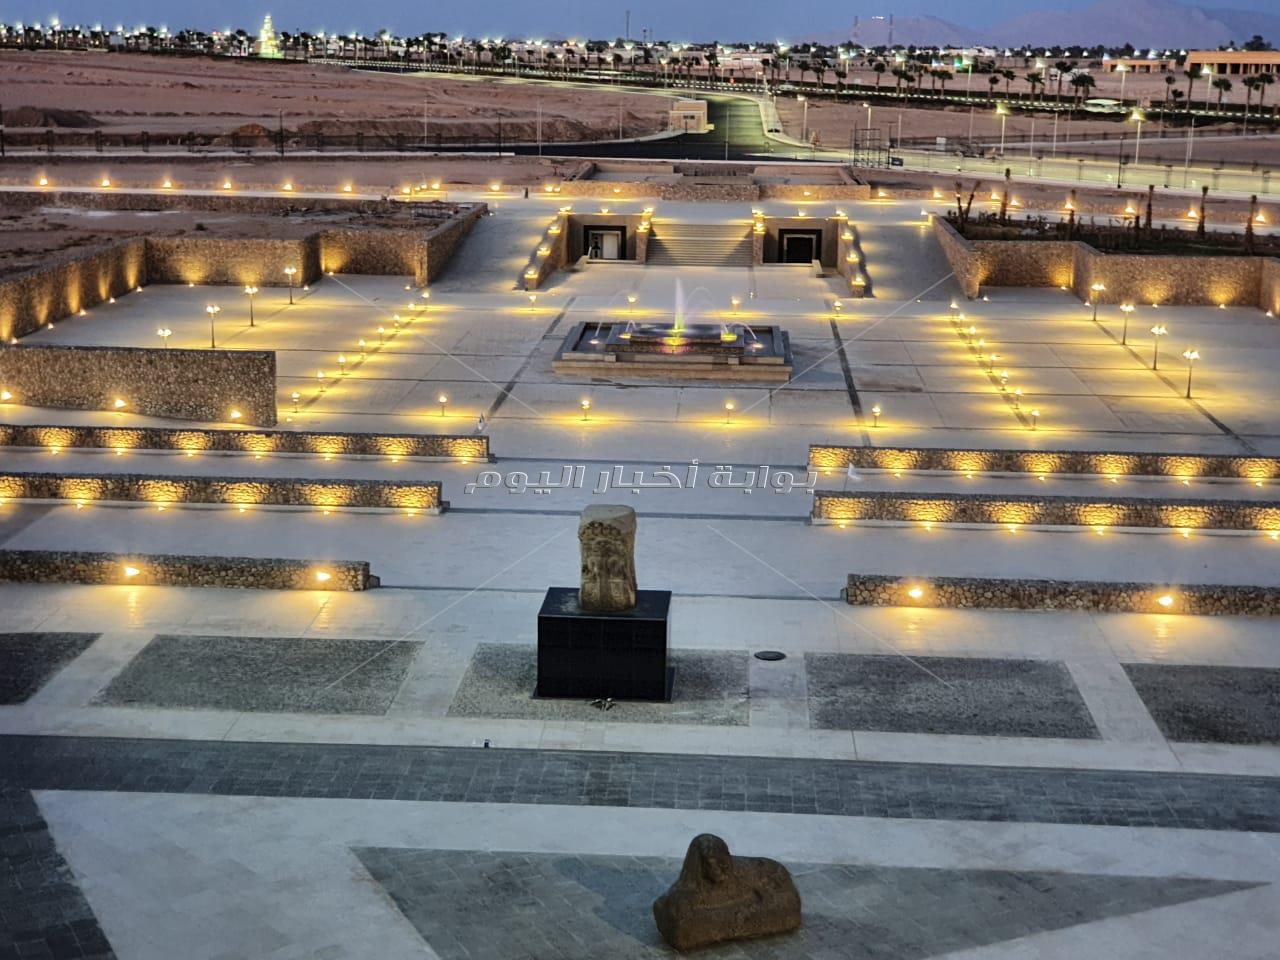 متحف شرم الشيخ يبرز السياحة التاريخية والأثرية